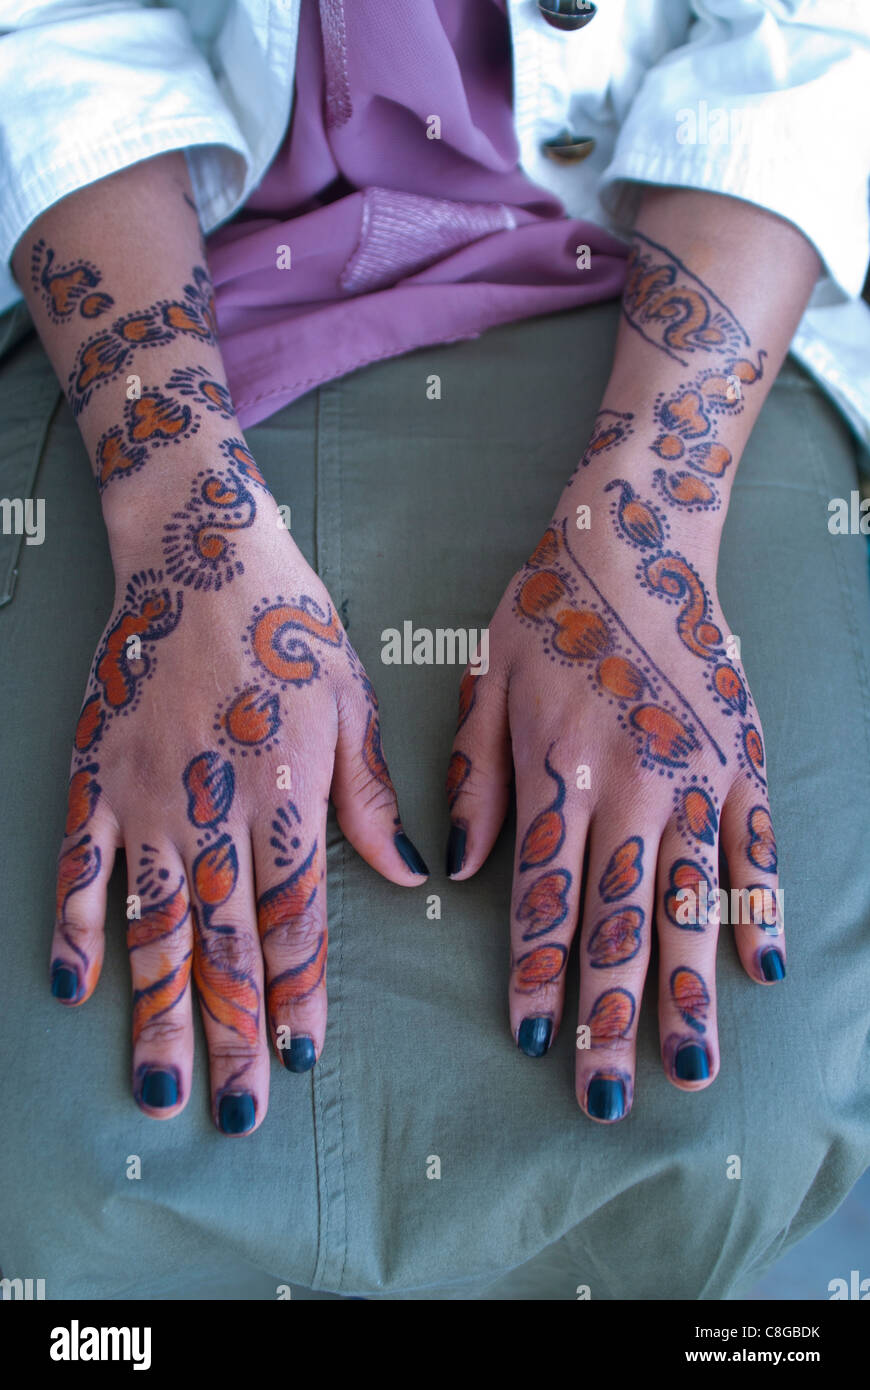 Somali Woman's hands couvert de tatouages au henné, Addis-Abeba, Ethiopie Banque D'Images